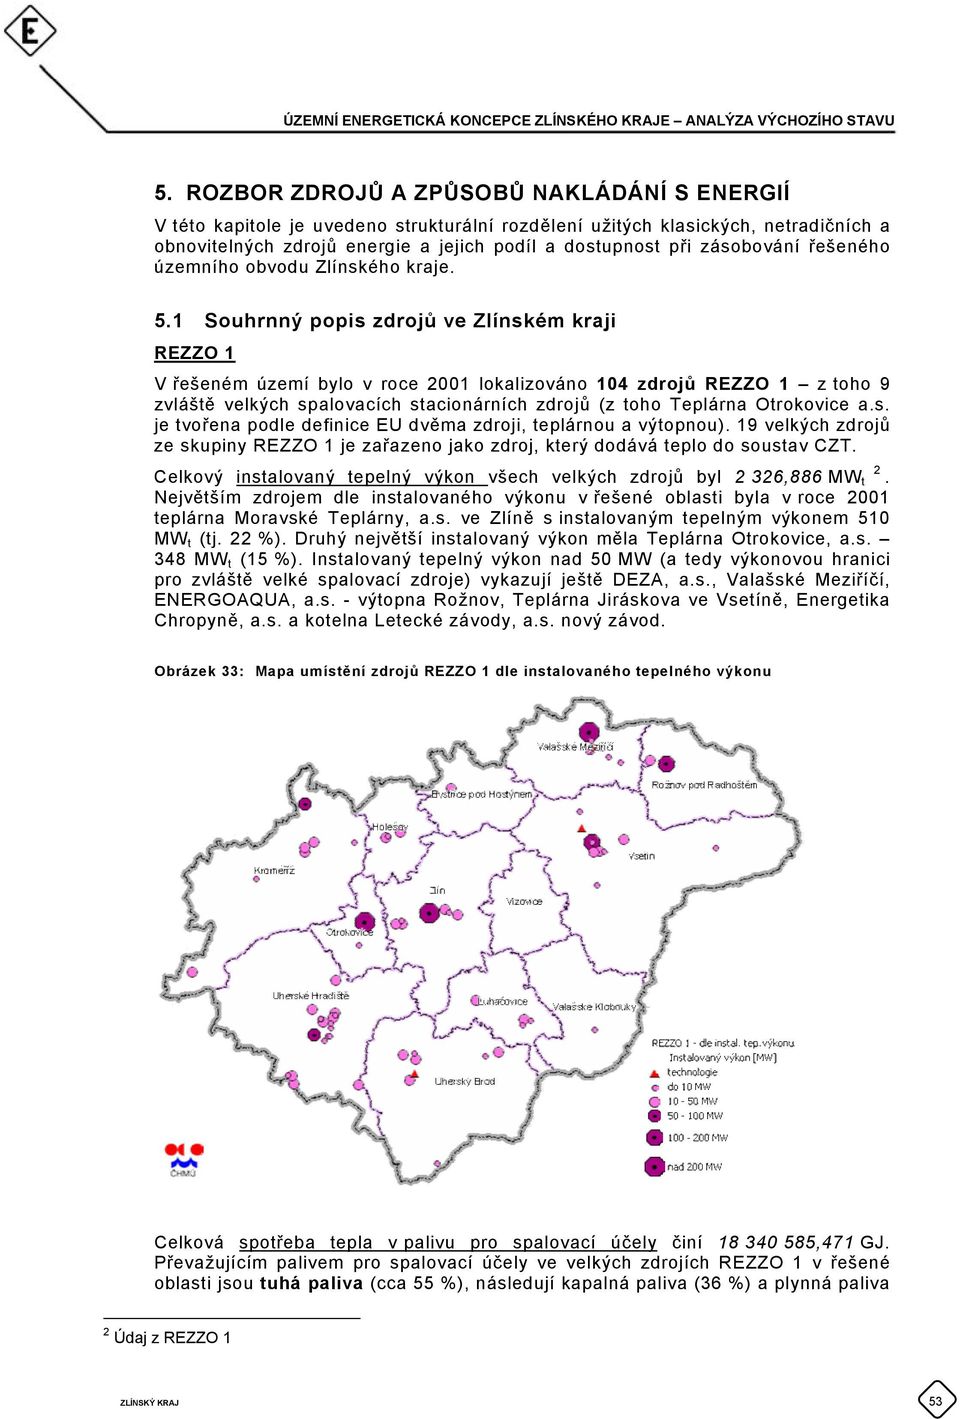 1 Souhrnný popis zdrojů ve Zlínském kraji REZZO 1 V řešeném území bylo v roce 2001 lokalizováno 104 zdrojů REZZO 1 z toho 9 zvláště velkých spalovacích stacionárních zdrojů (z toho Teplárna